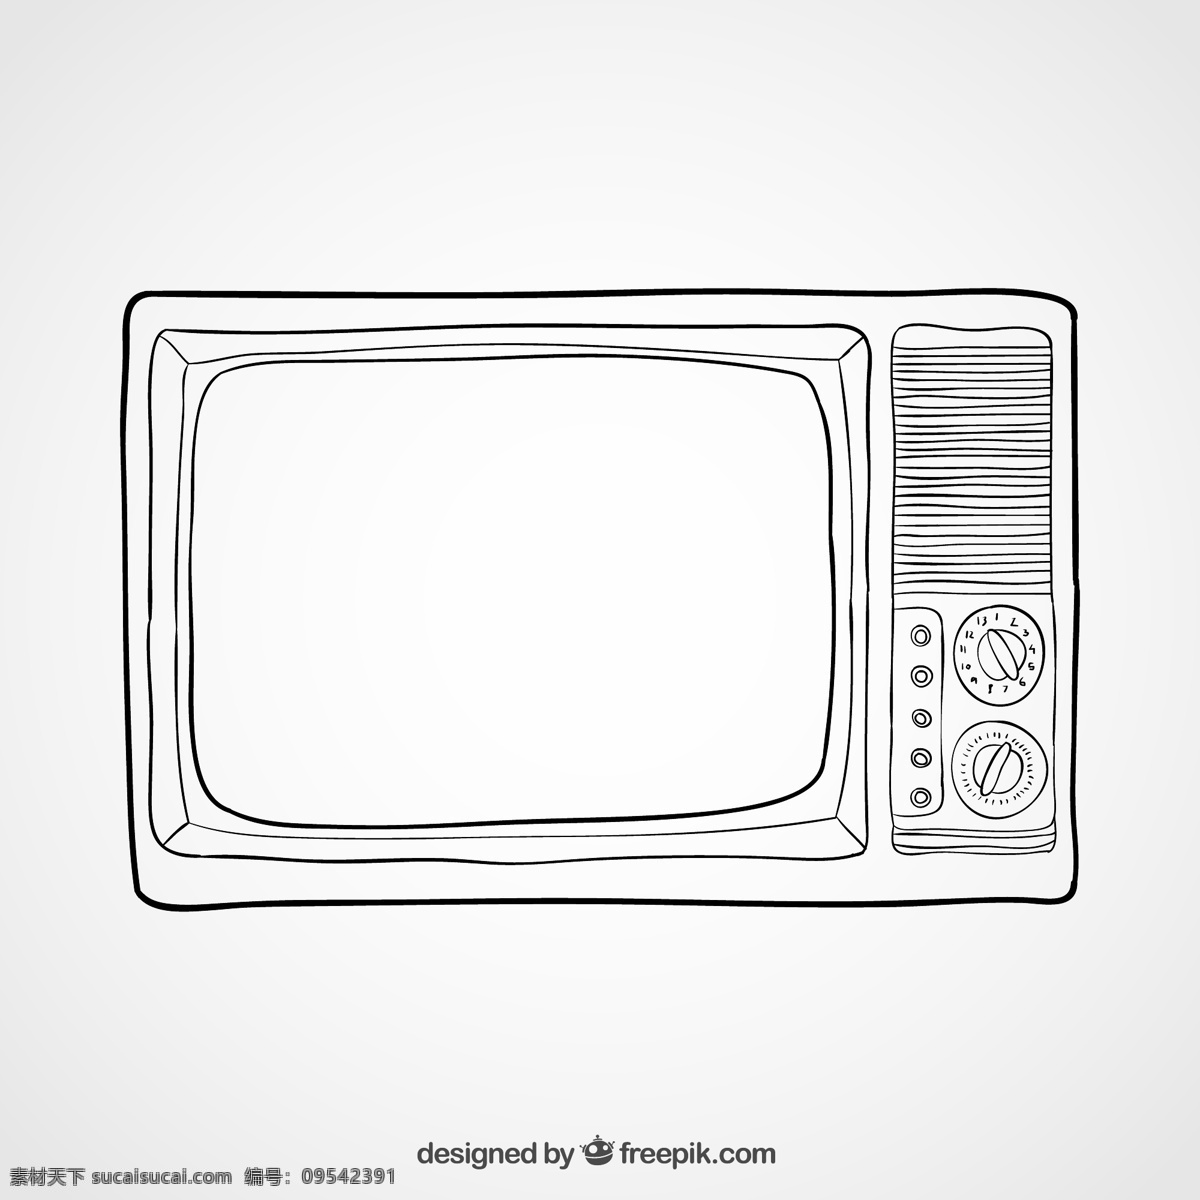 黑白 电视机 矢量 家电 黑白电视机 矢量图 格式 高清图片